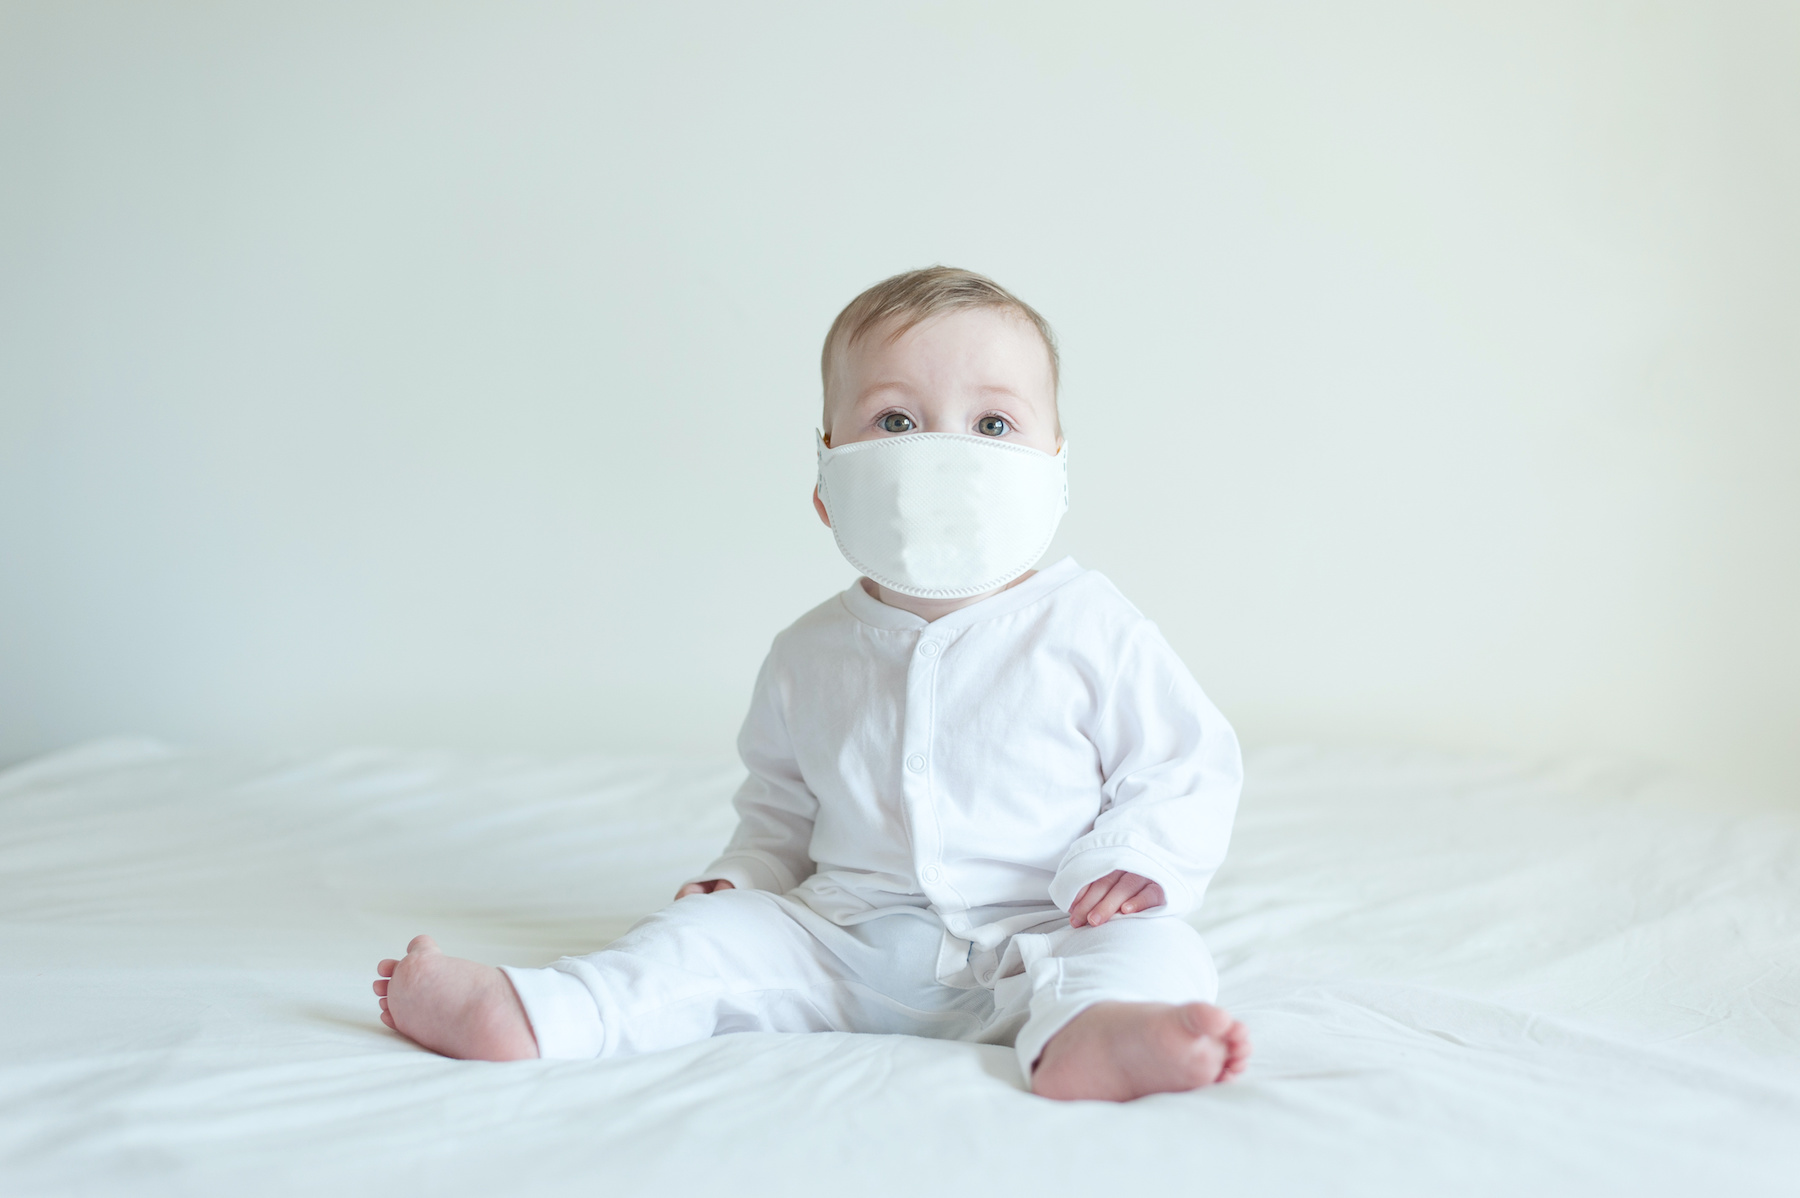 Des médecins ont eu affaire au cas d’un bébé avec une charge virale anormalement élevée. © noeliauroz, Adobe Stock